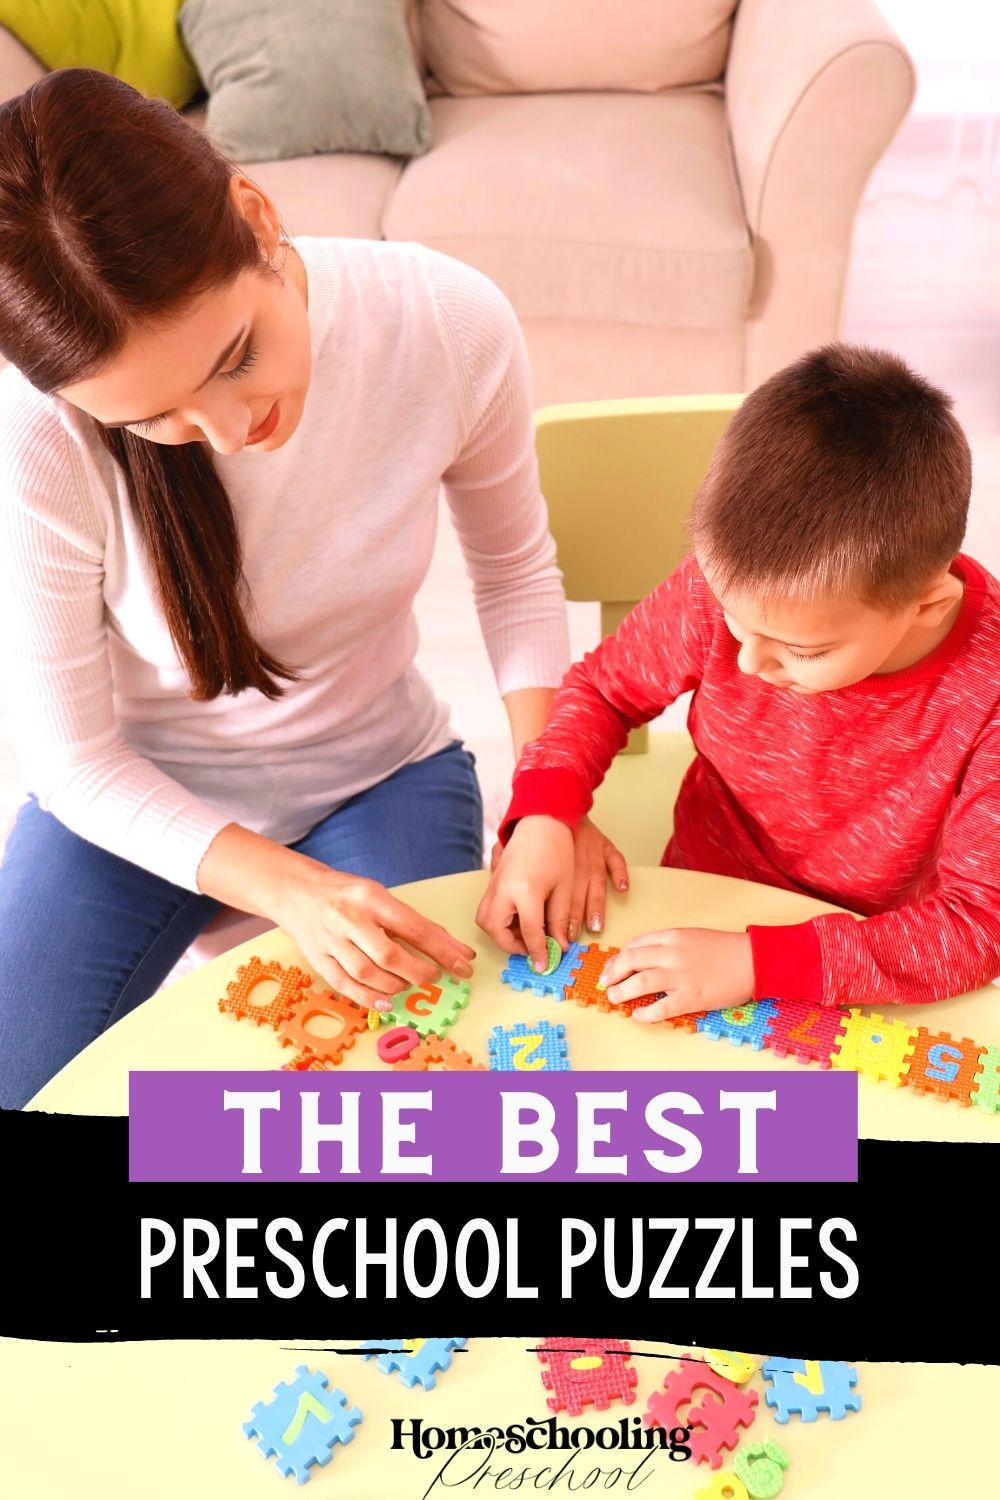 The Best Preschool Puzzles